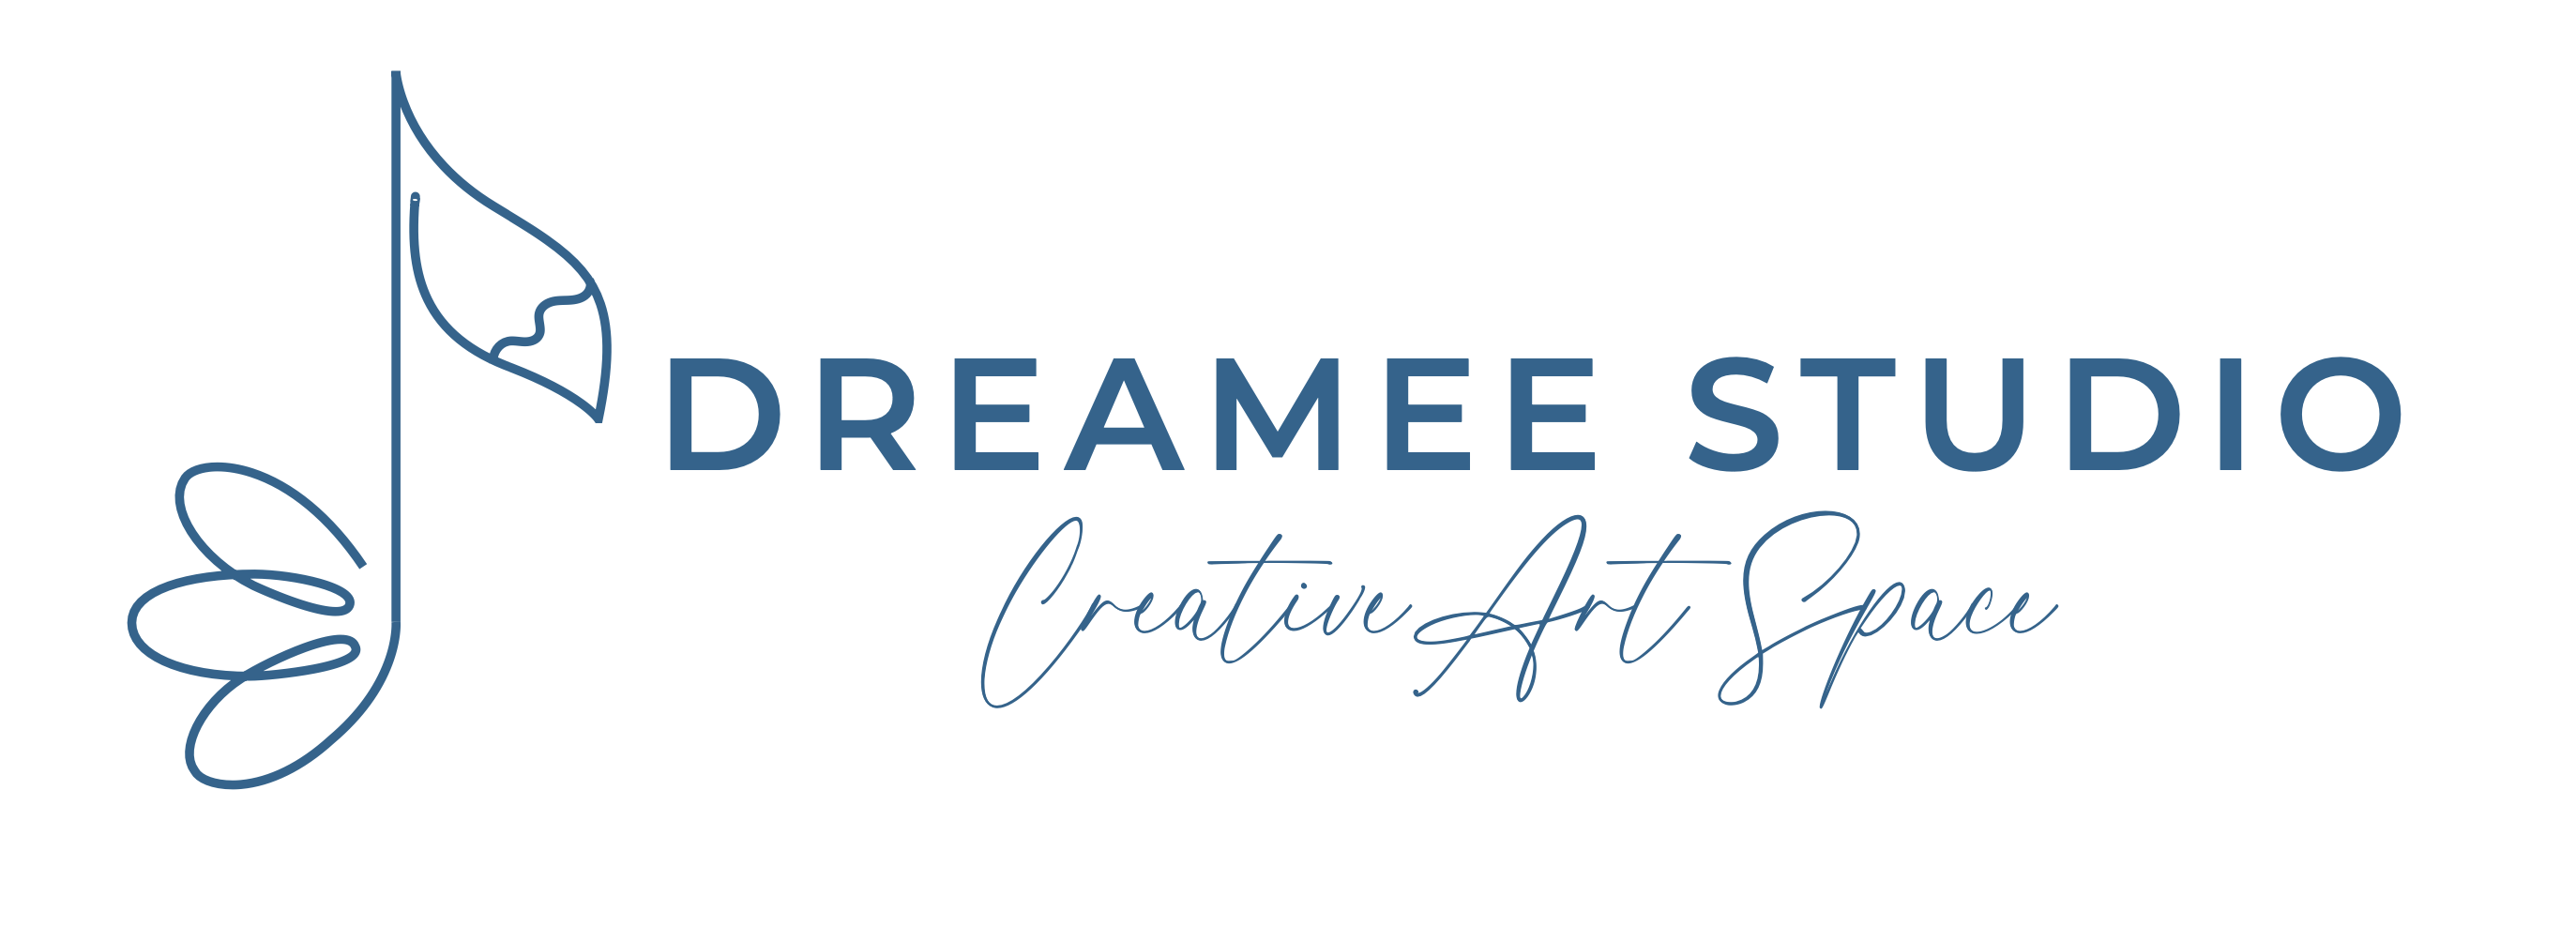 Dreamee Studio